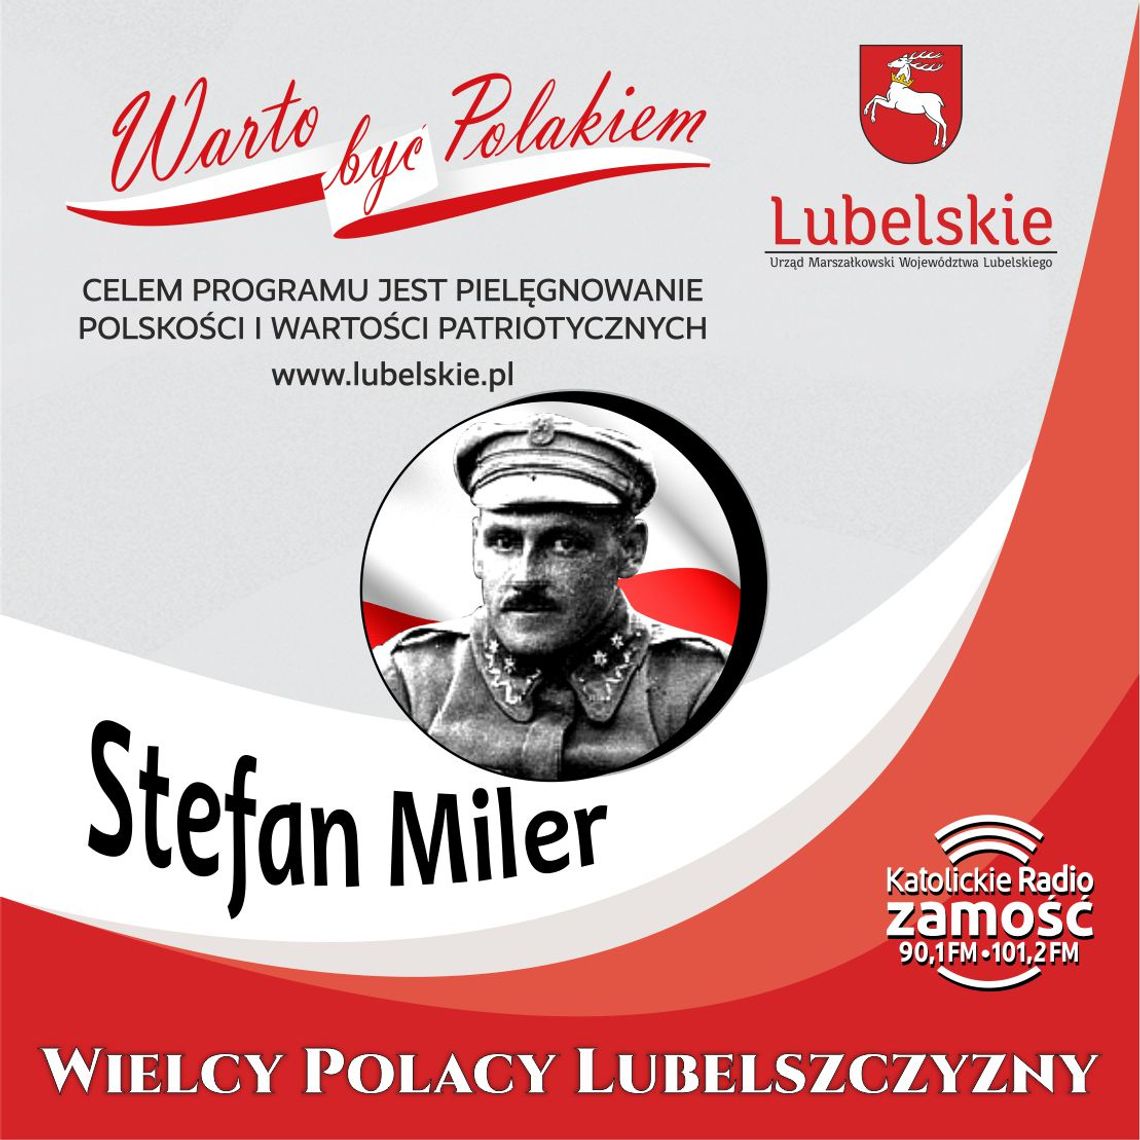 Wielcy Polacy Lubelszczyzny - Stefan Miler